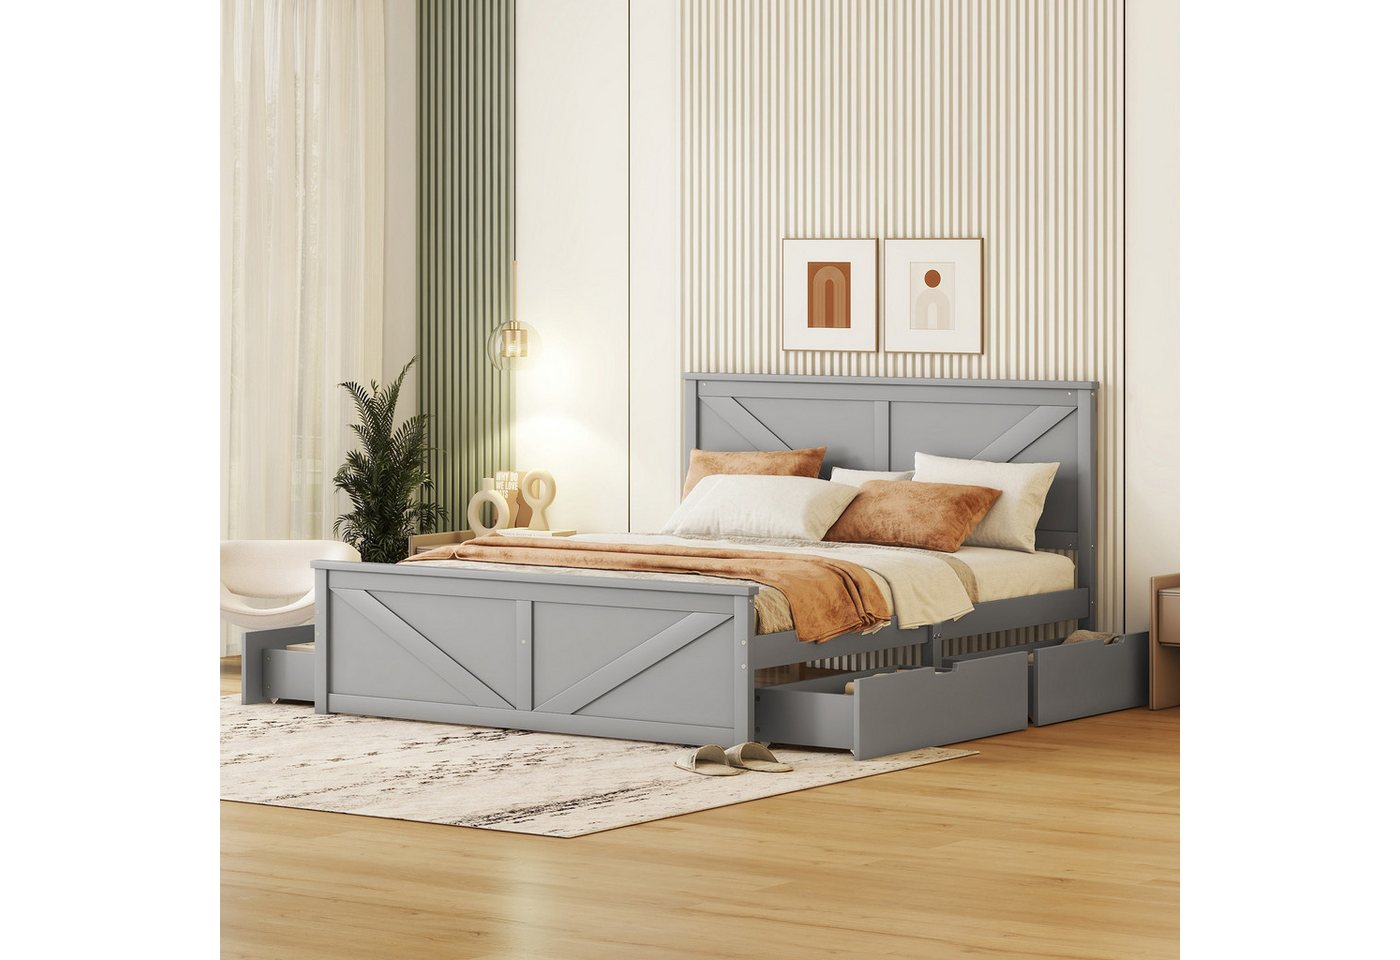 Odikalo Holzbett Doppelbett Pritsch Bett 4 Schubladen Kopfteil 160x200cm Weiß/Grau von Odikalo